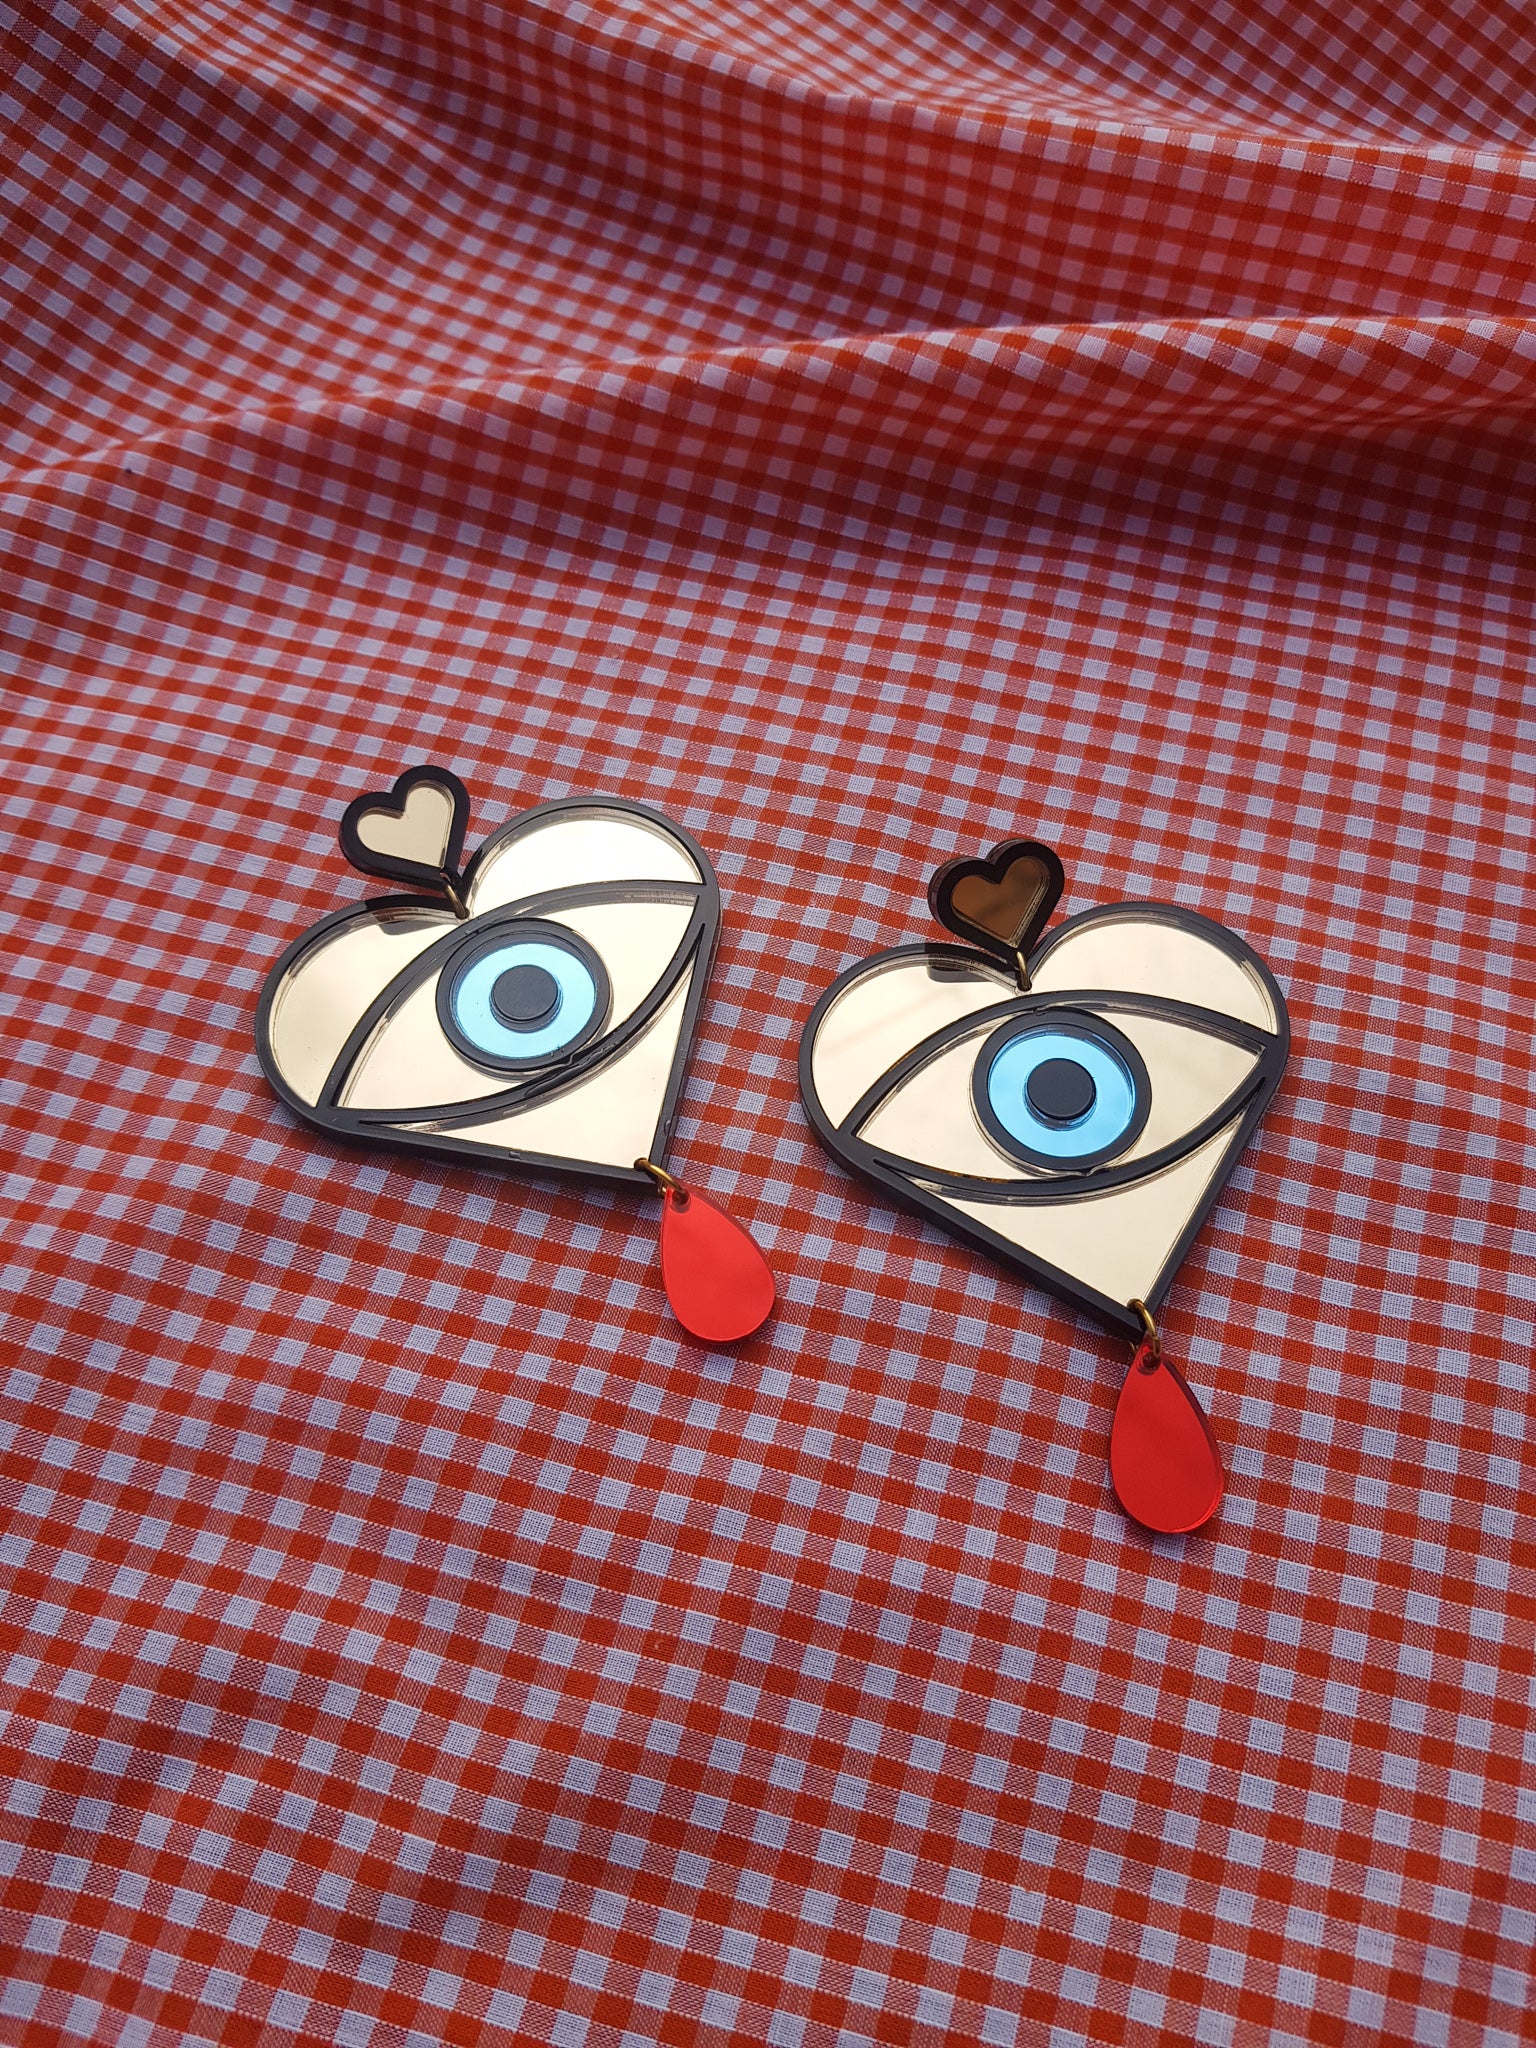 Statement eye earrings with drop